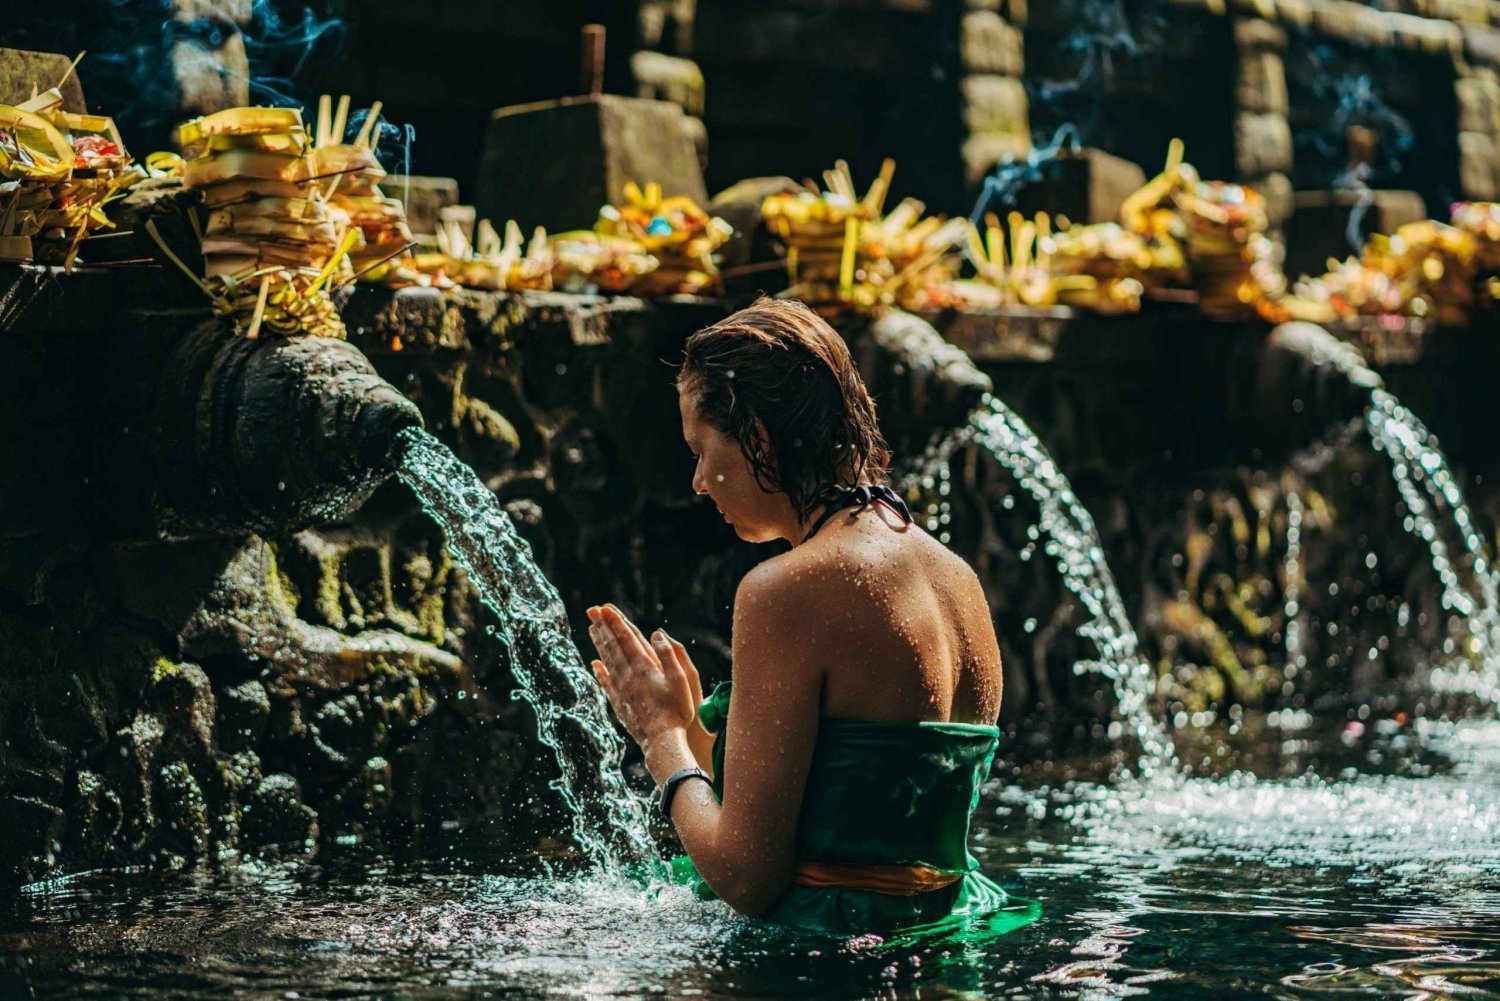 Bali: Jornada espiritual em Ubud com cerimônia de purificação.